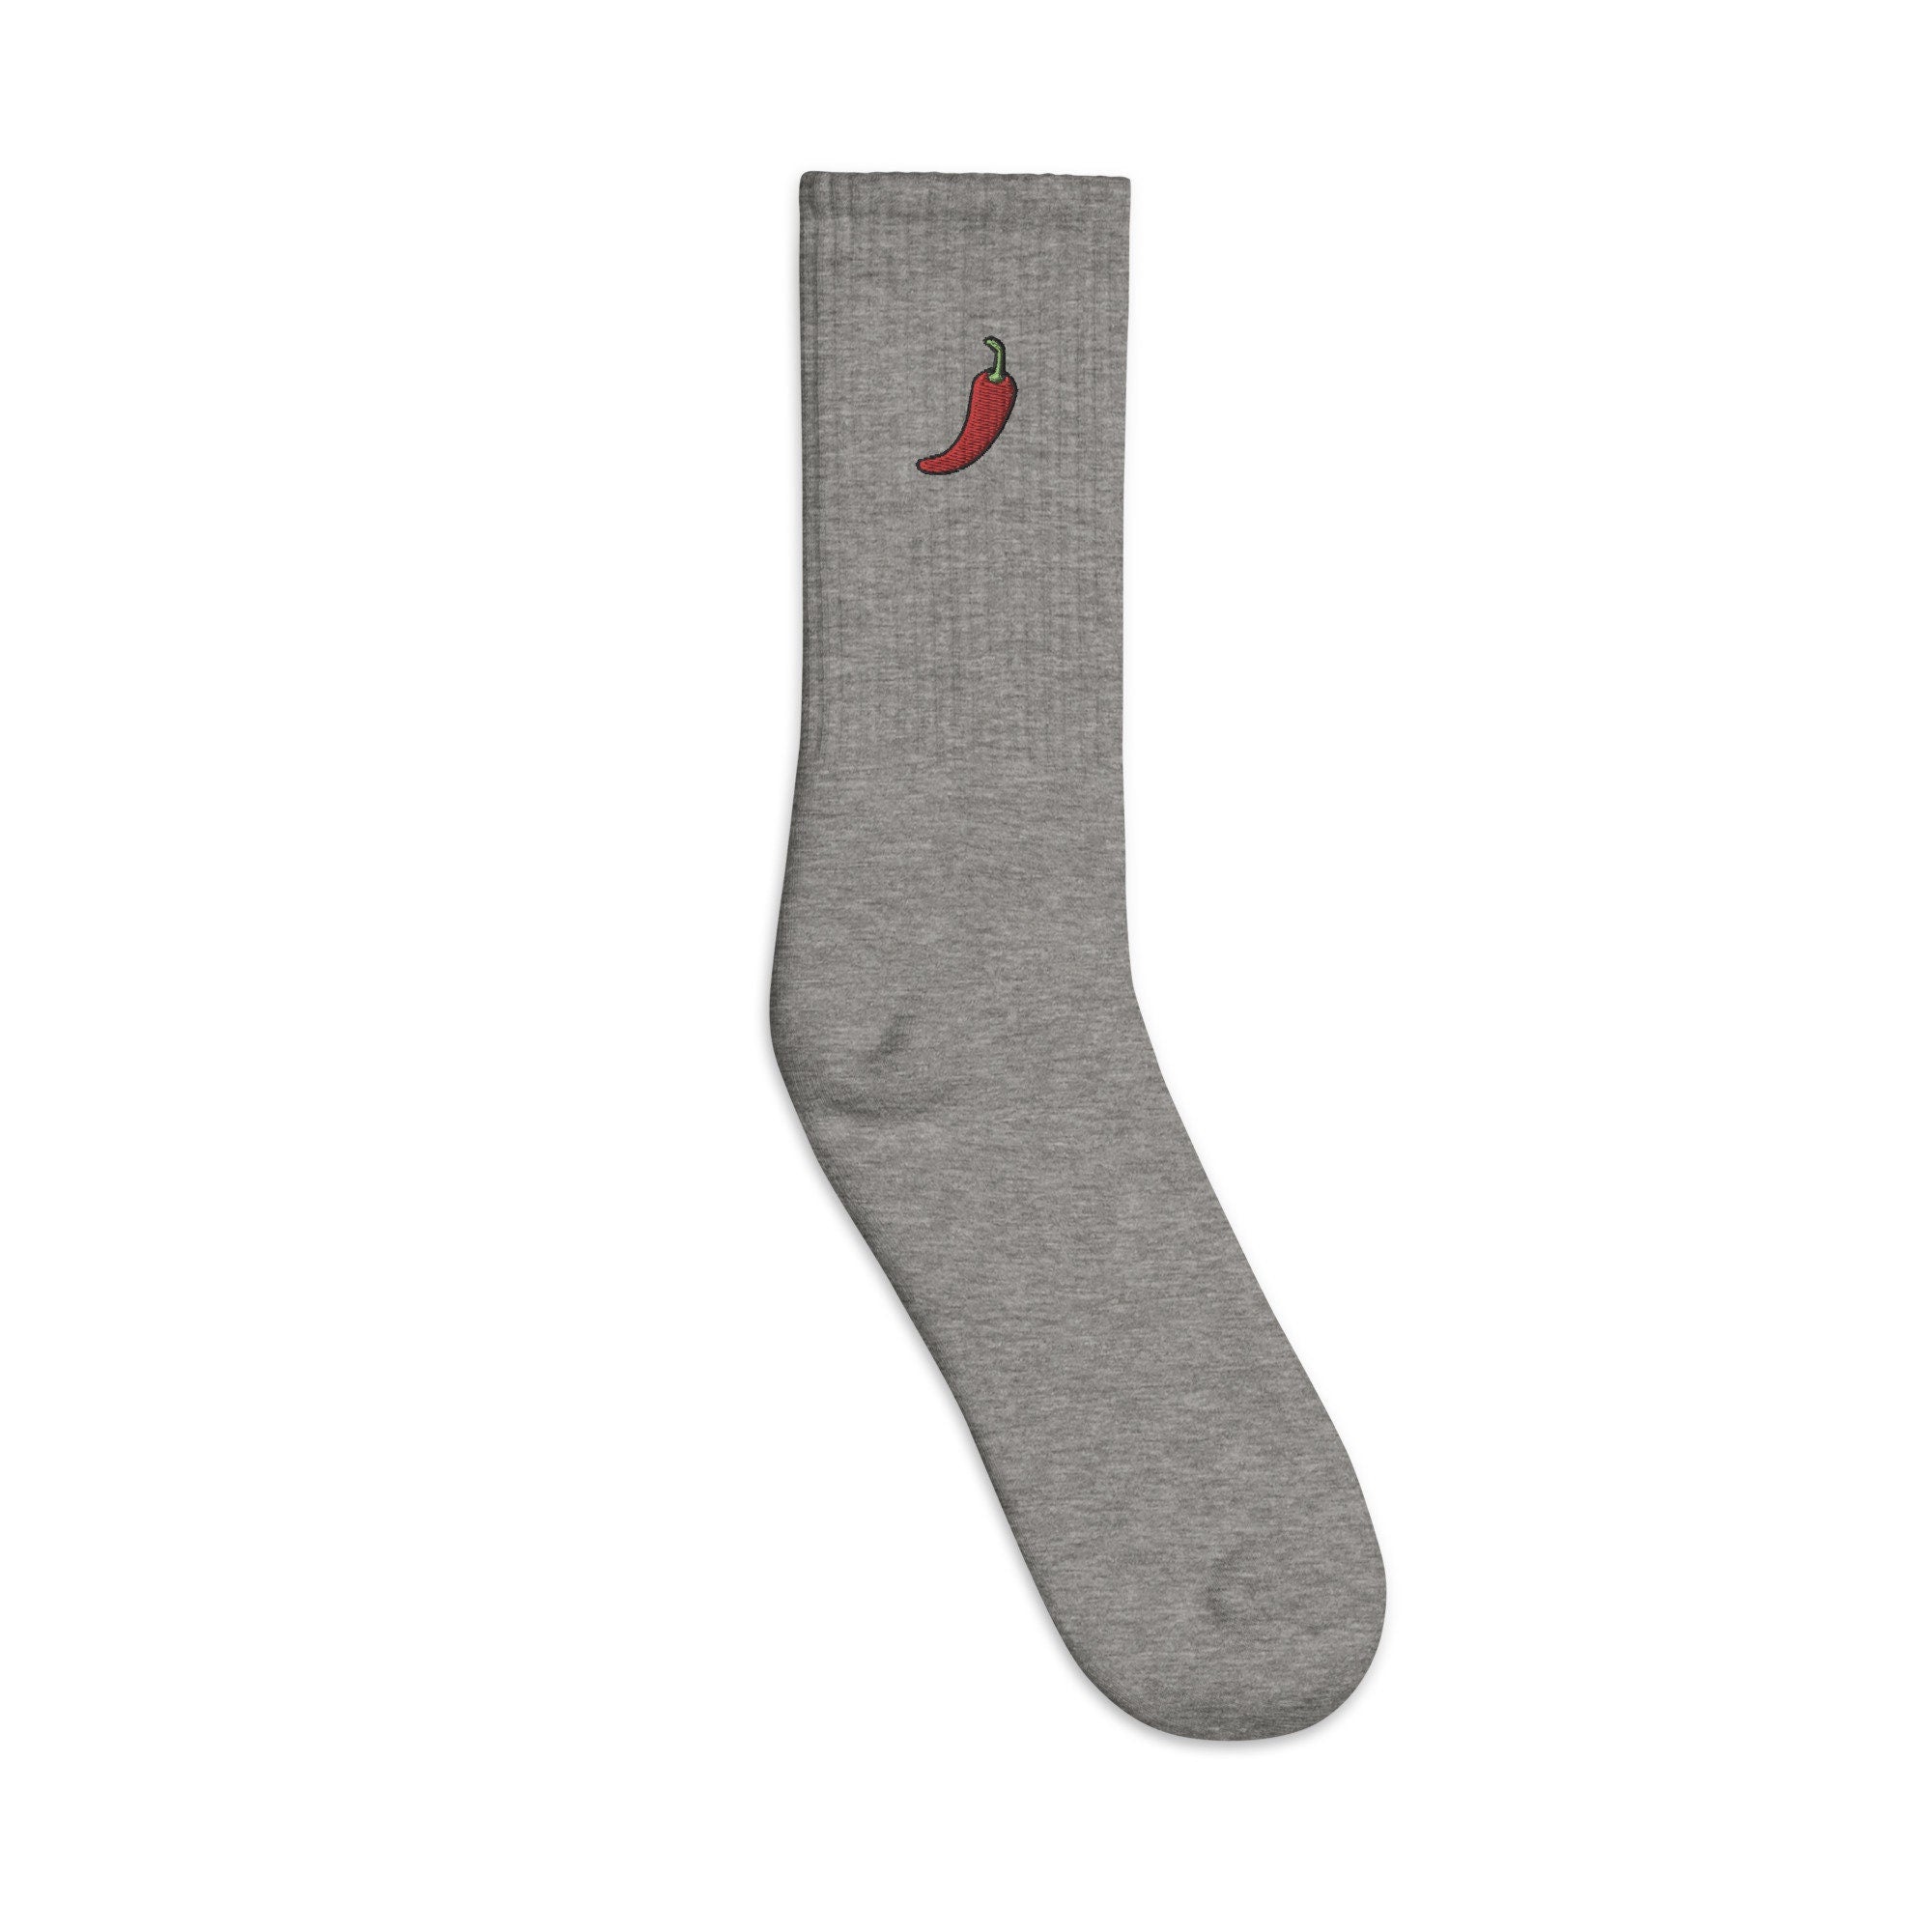 Pepper Embroidered Socks, Premium Embroidered Socks, Long Socks Gift - Multiple Colors